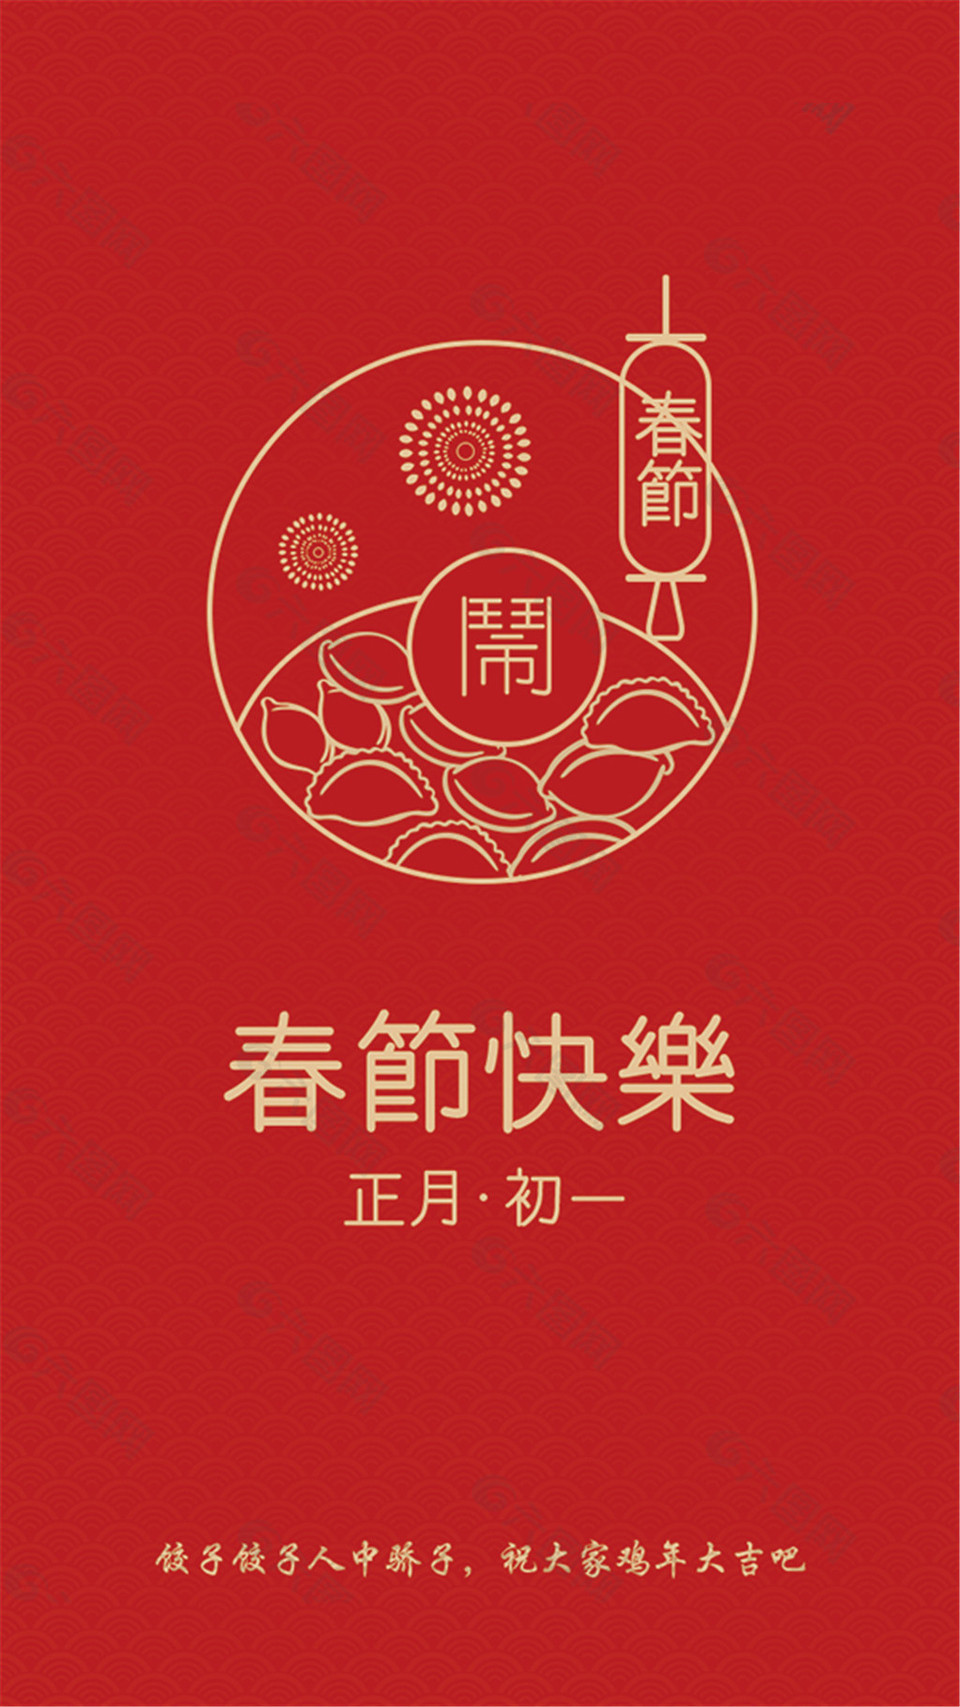 春节海报文字内容图片